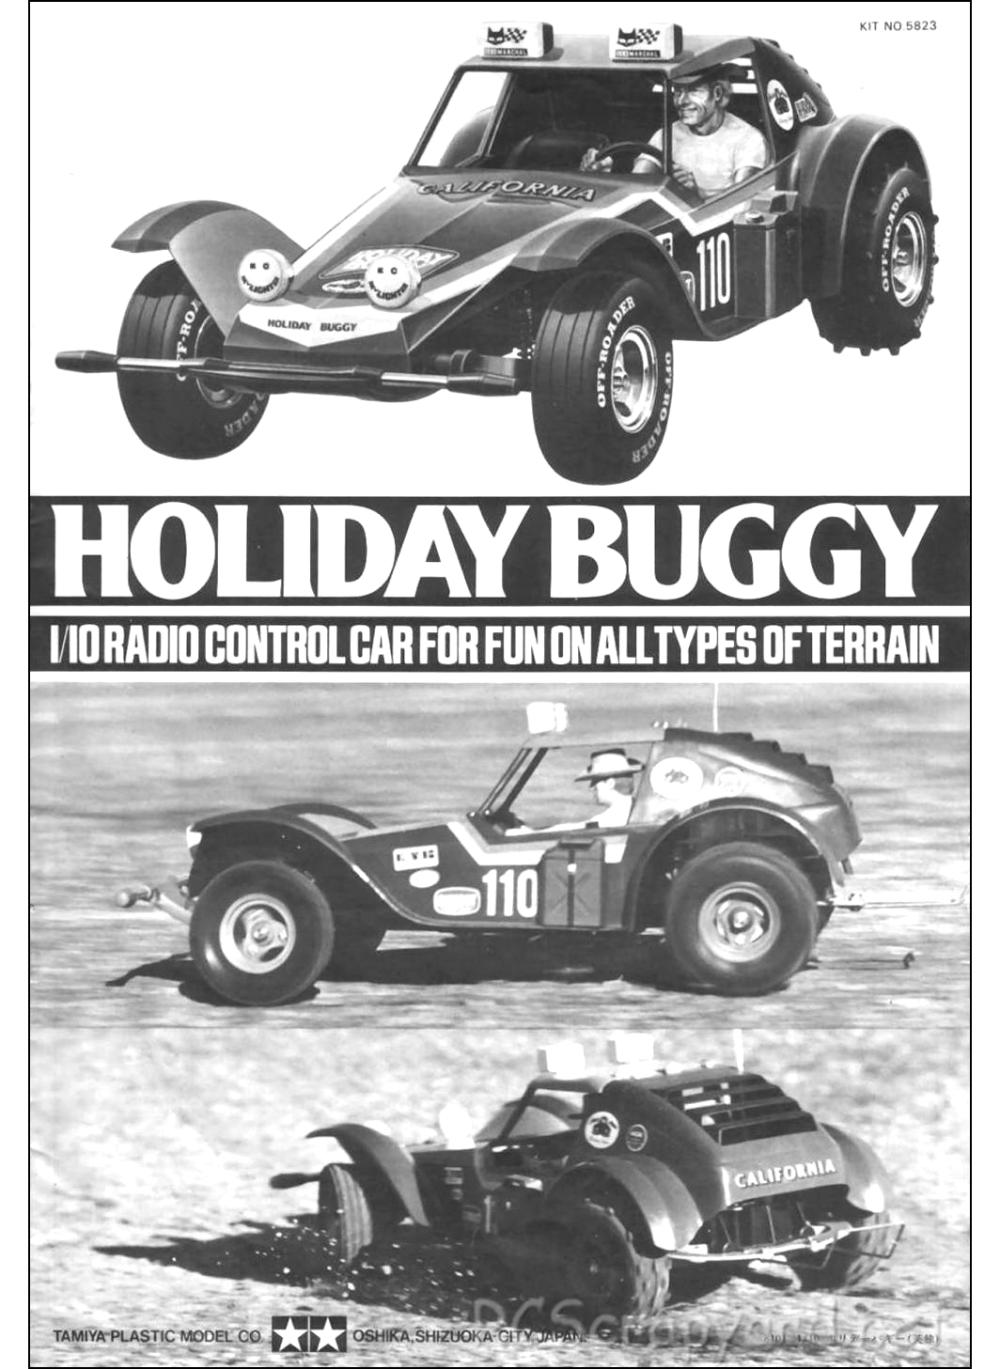 Tamiya - Holiday Buggy - 58023 - Manual